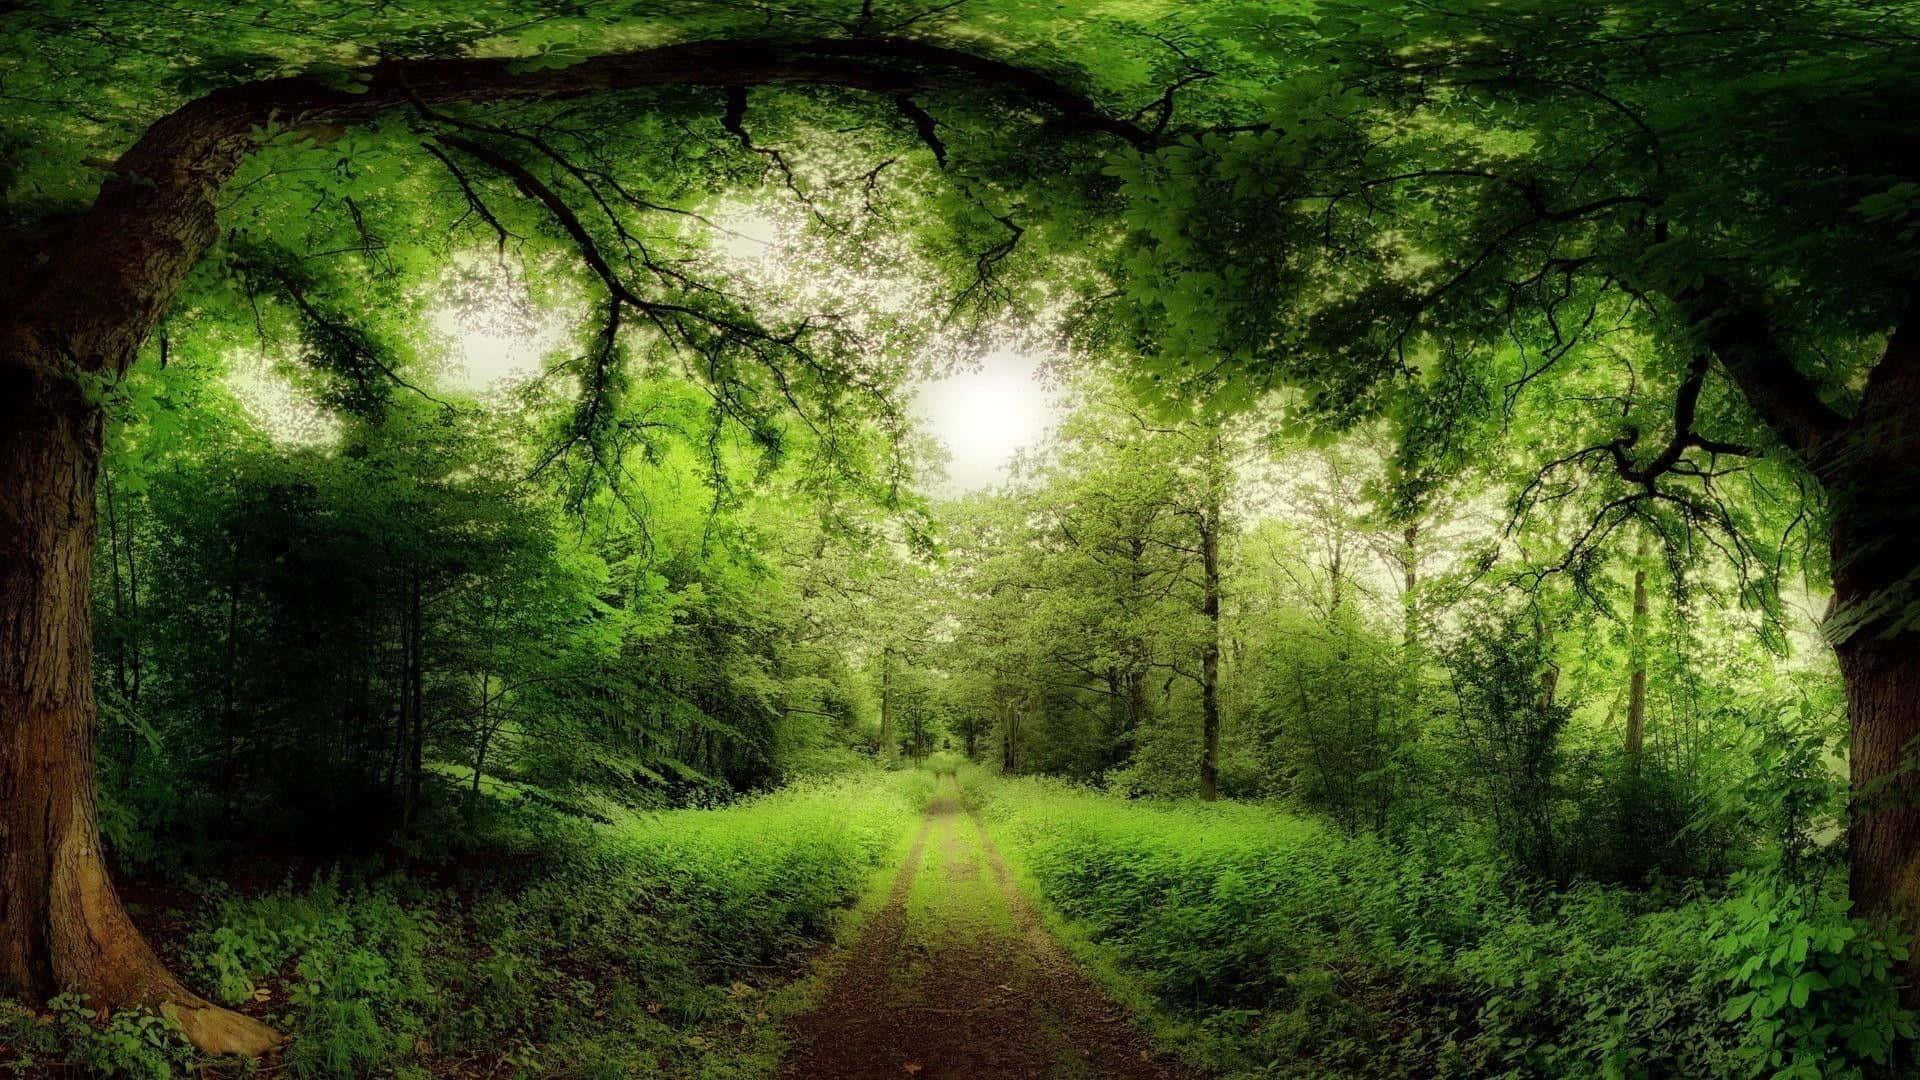 Einweg Durch Den Wald Mit Bäumen Und Grünem Gras.